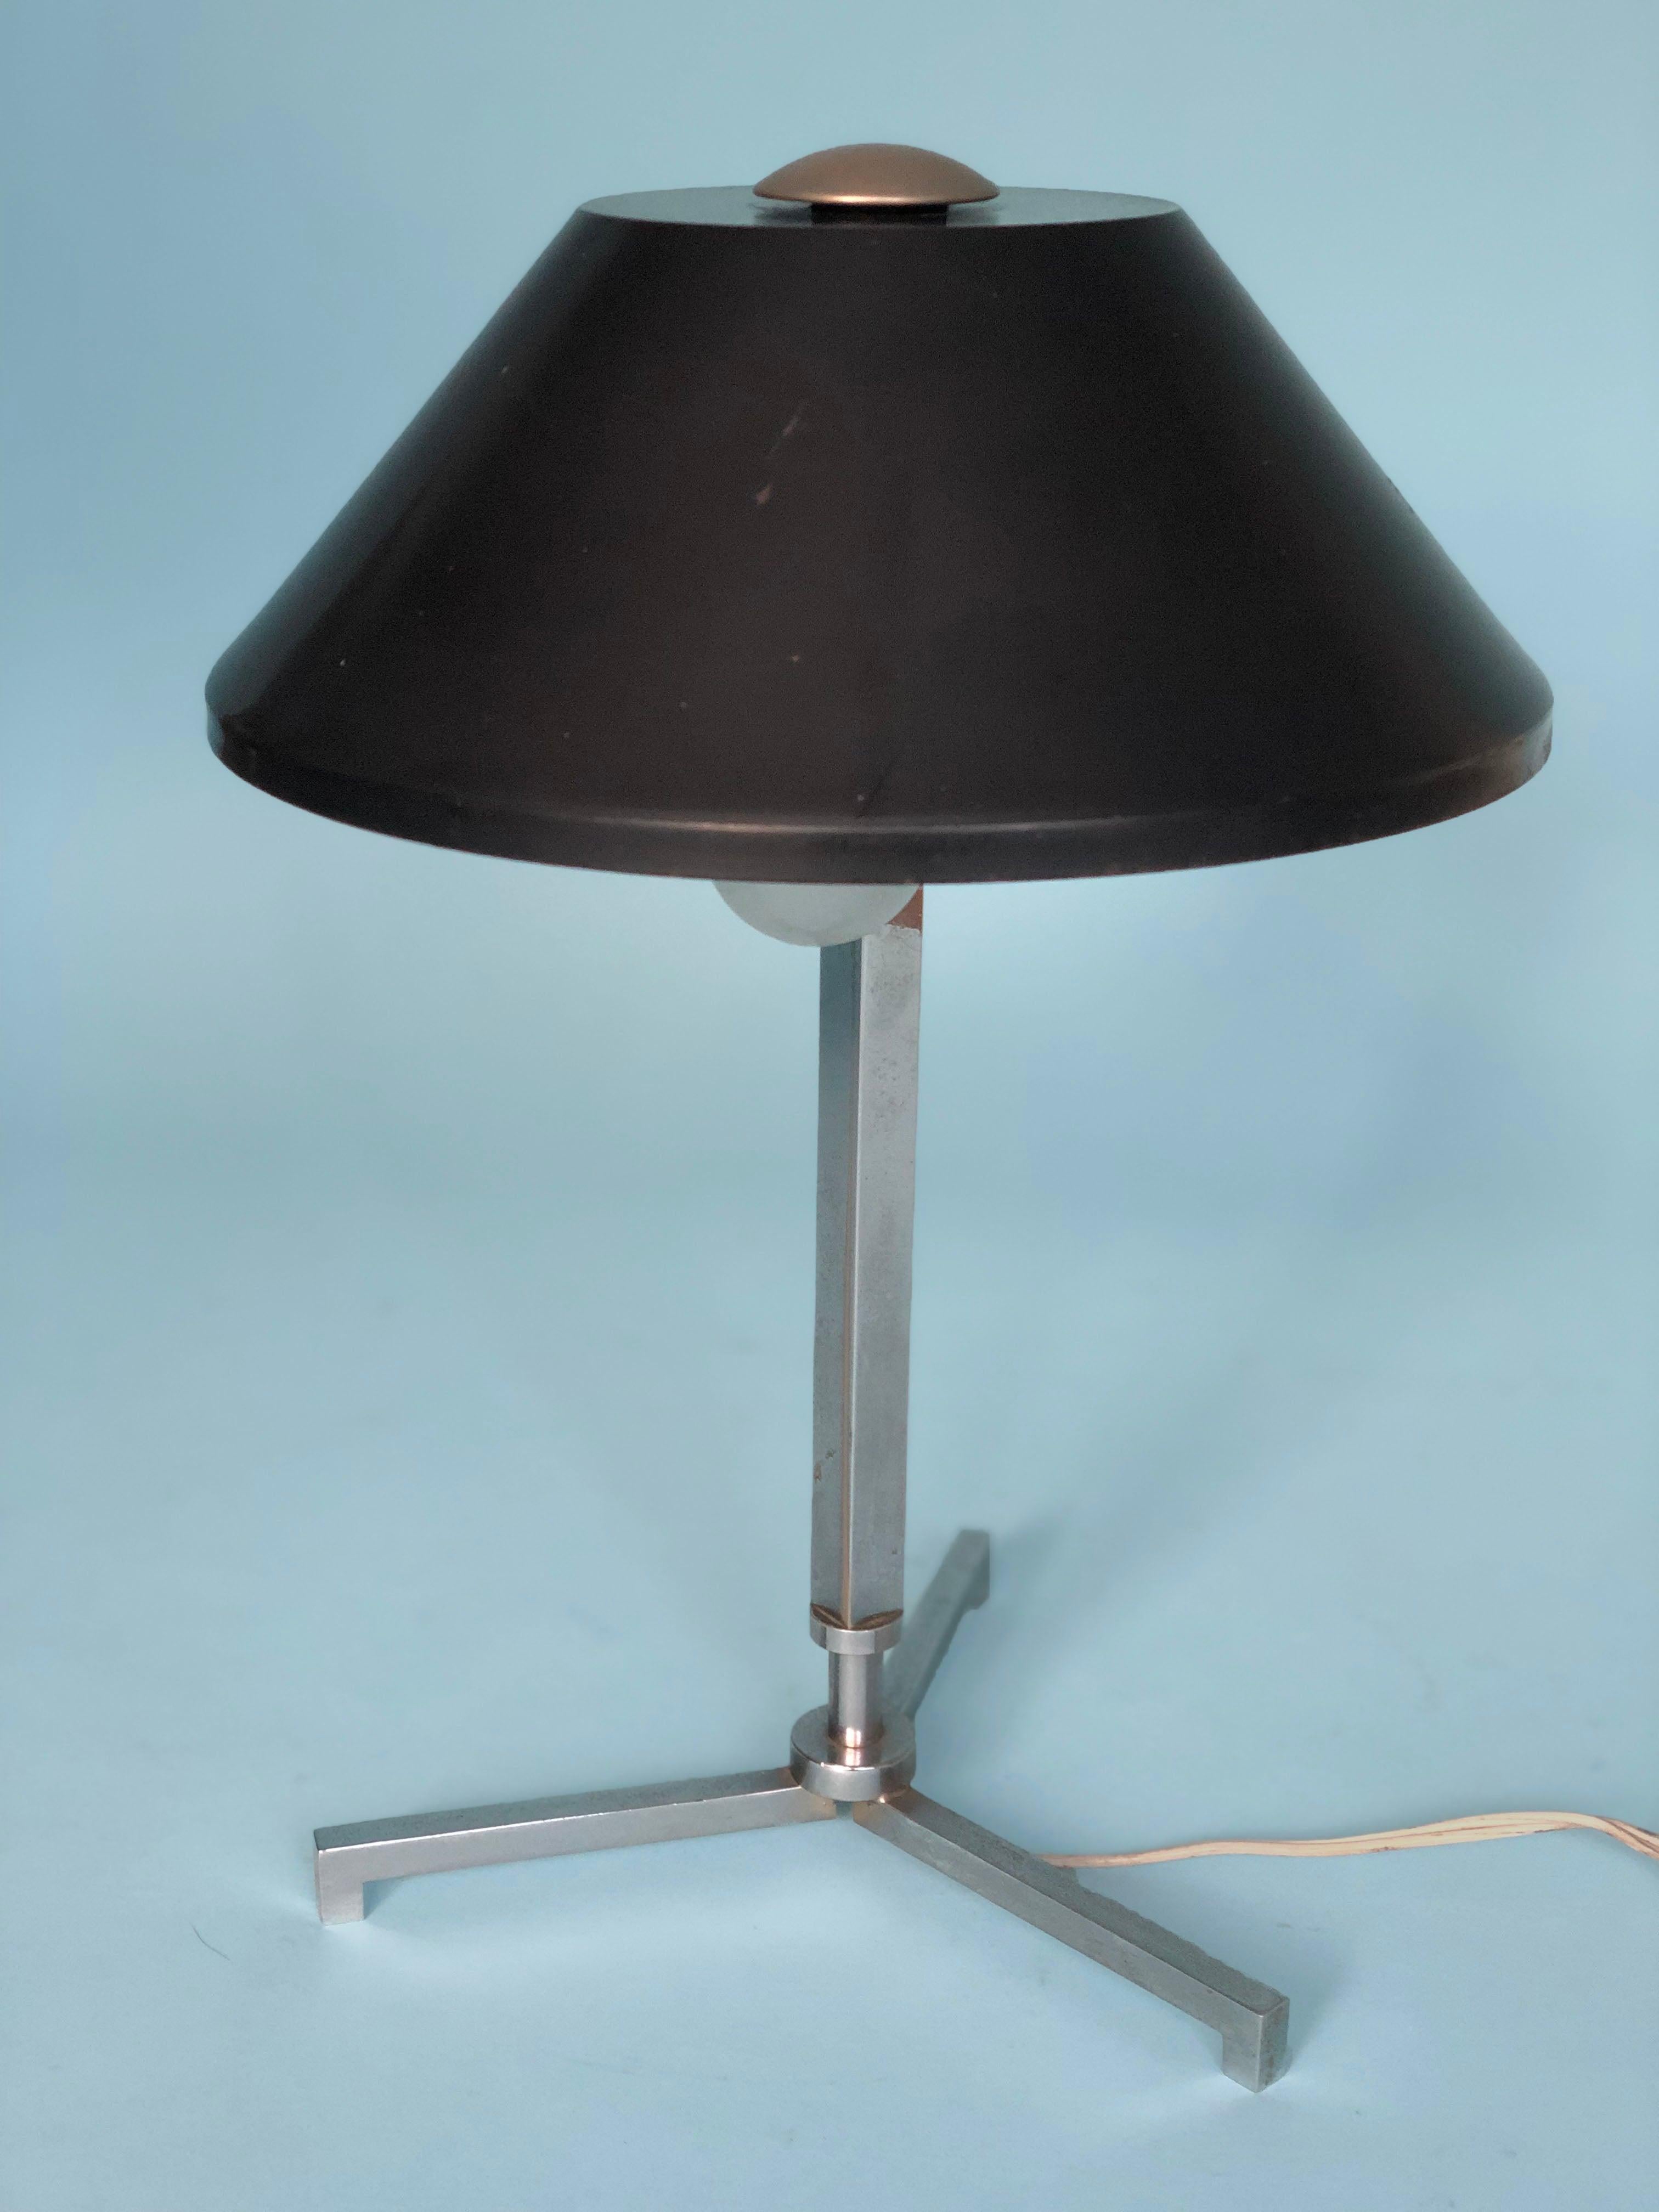 Mid-20th Century Chrome Table Lamp By Jo Hammerborg for Fog & Mørup Denmark 1960s